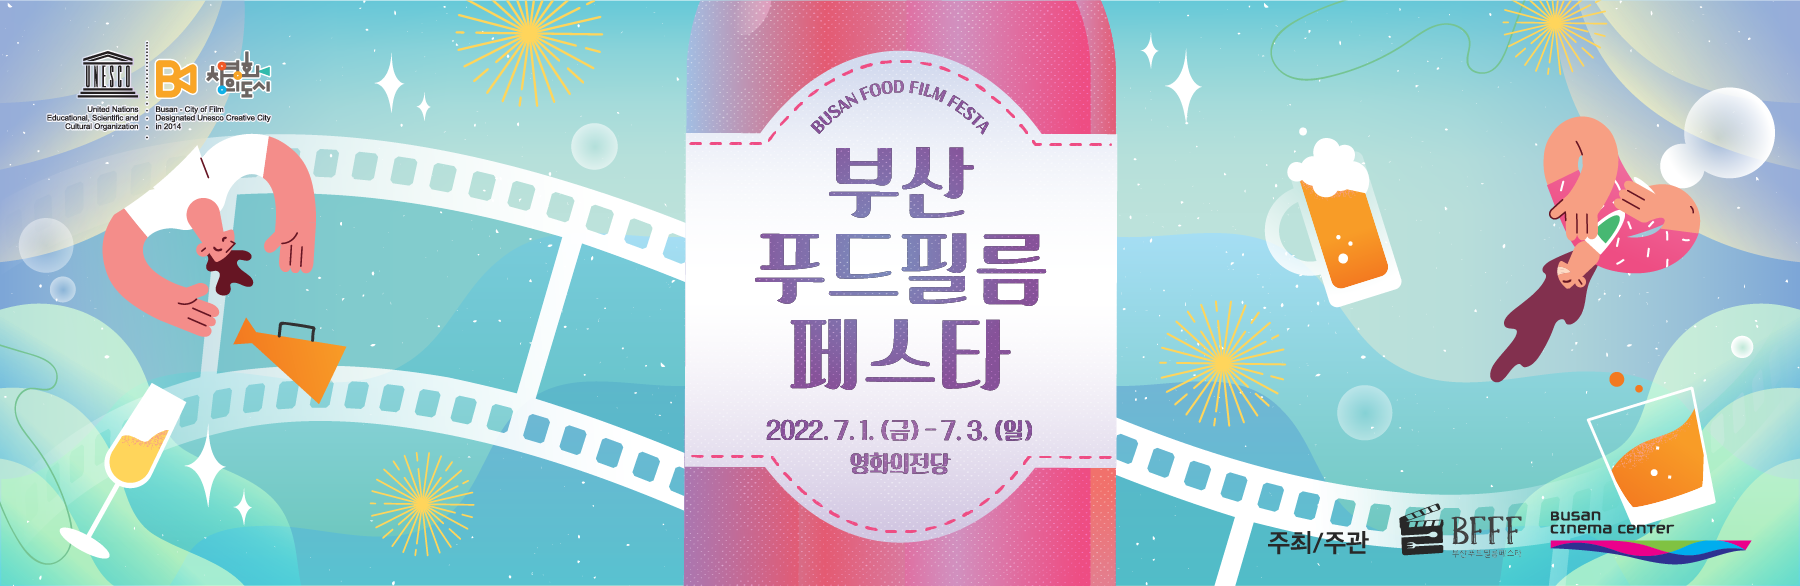 부산푸드필름페스타 2022.7.1(금)-7.3(일) 영화의전당 주최주관 BFFF 영화의전당